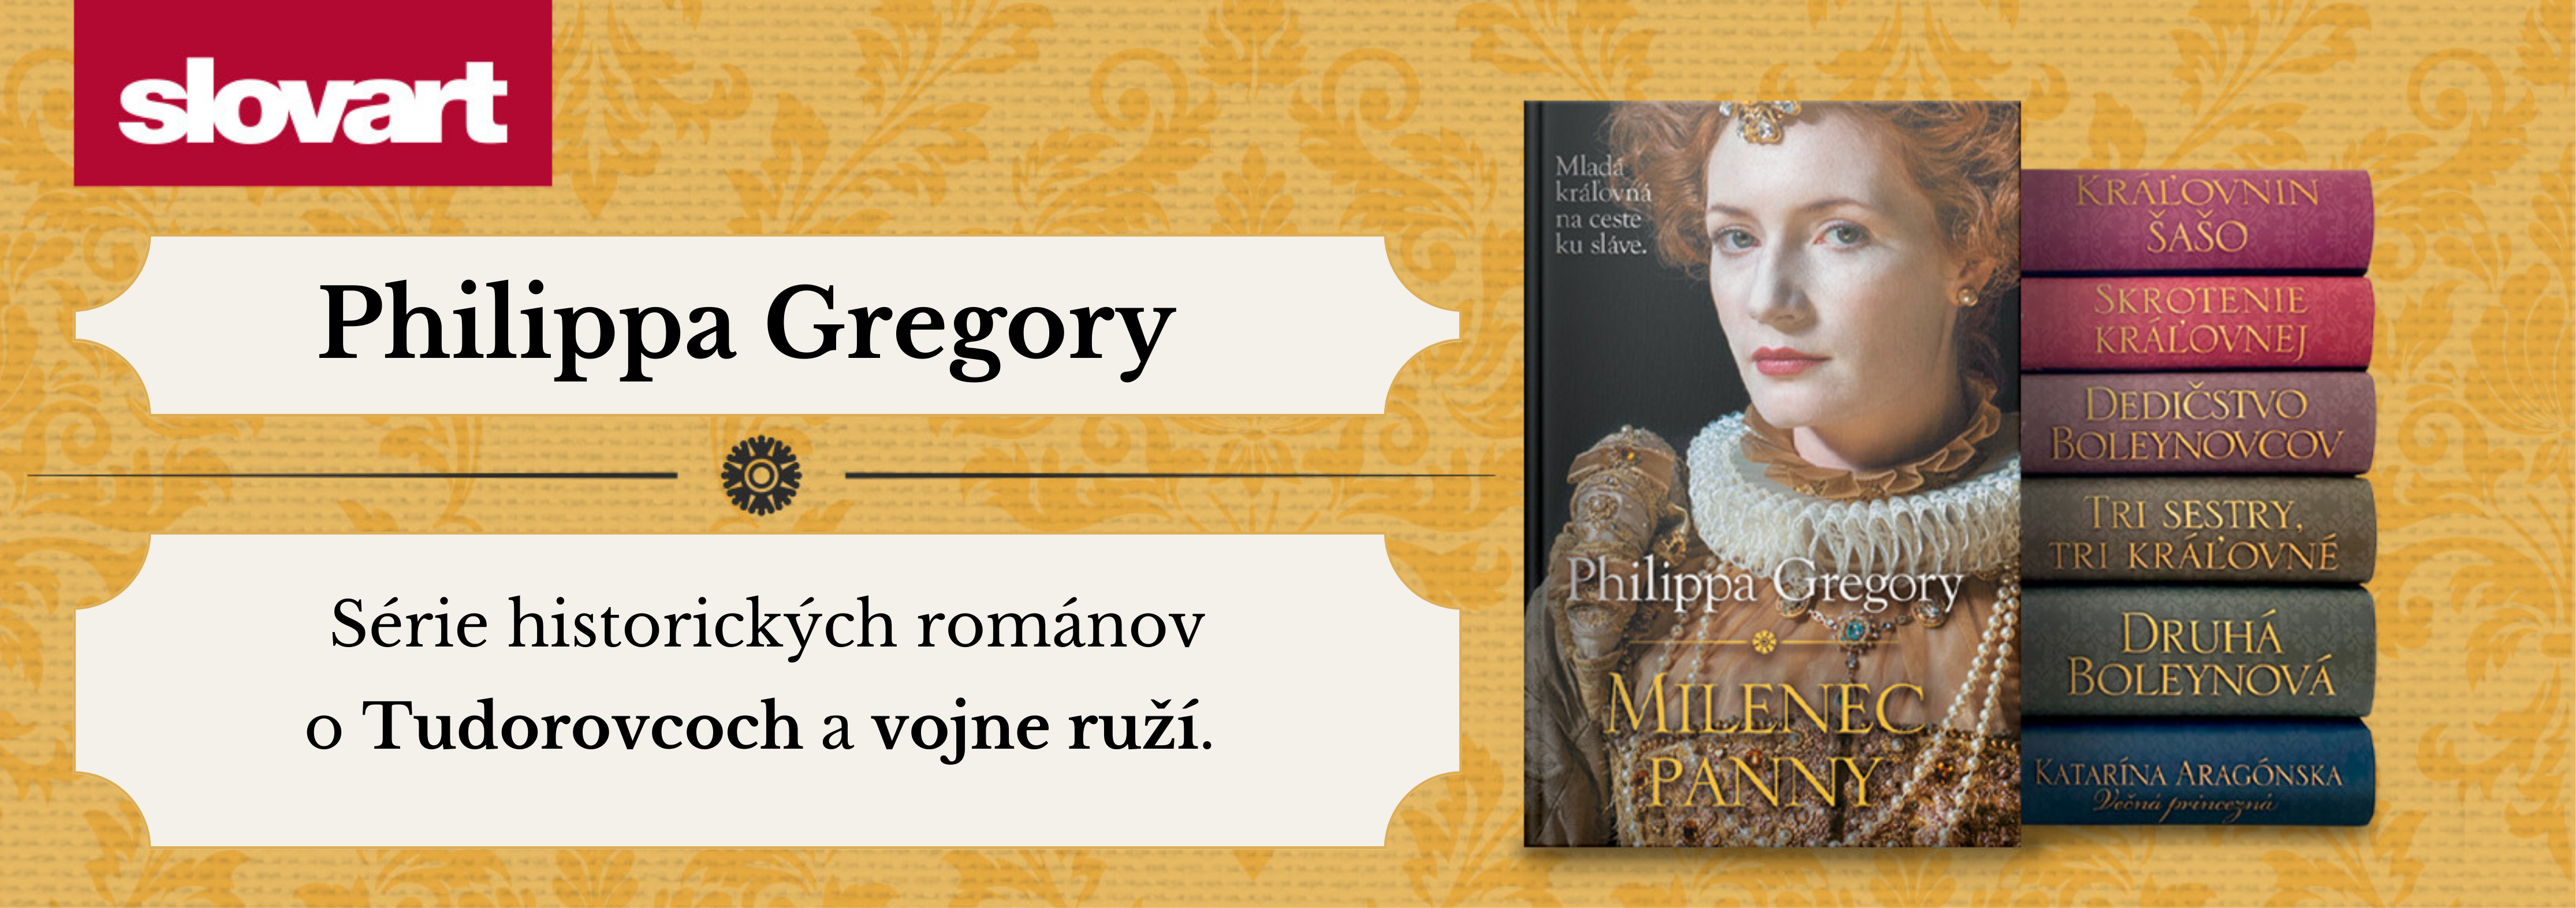 Philippa Gregory - historické romány